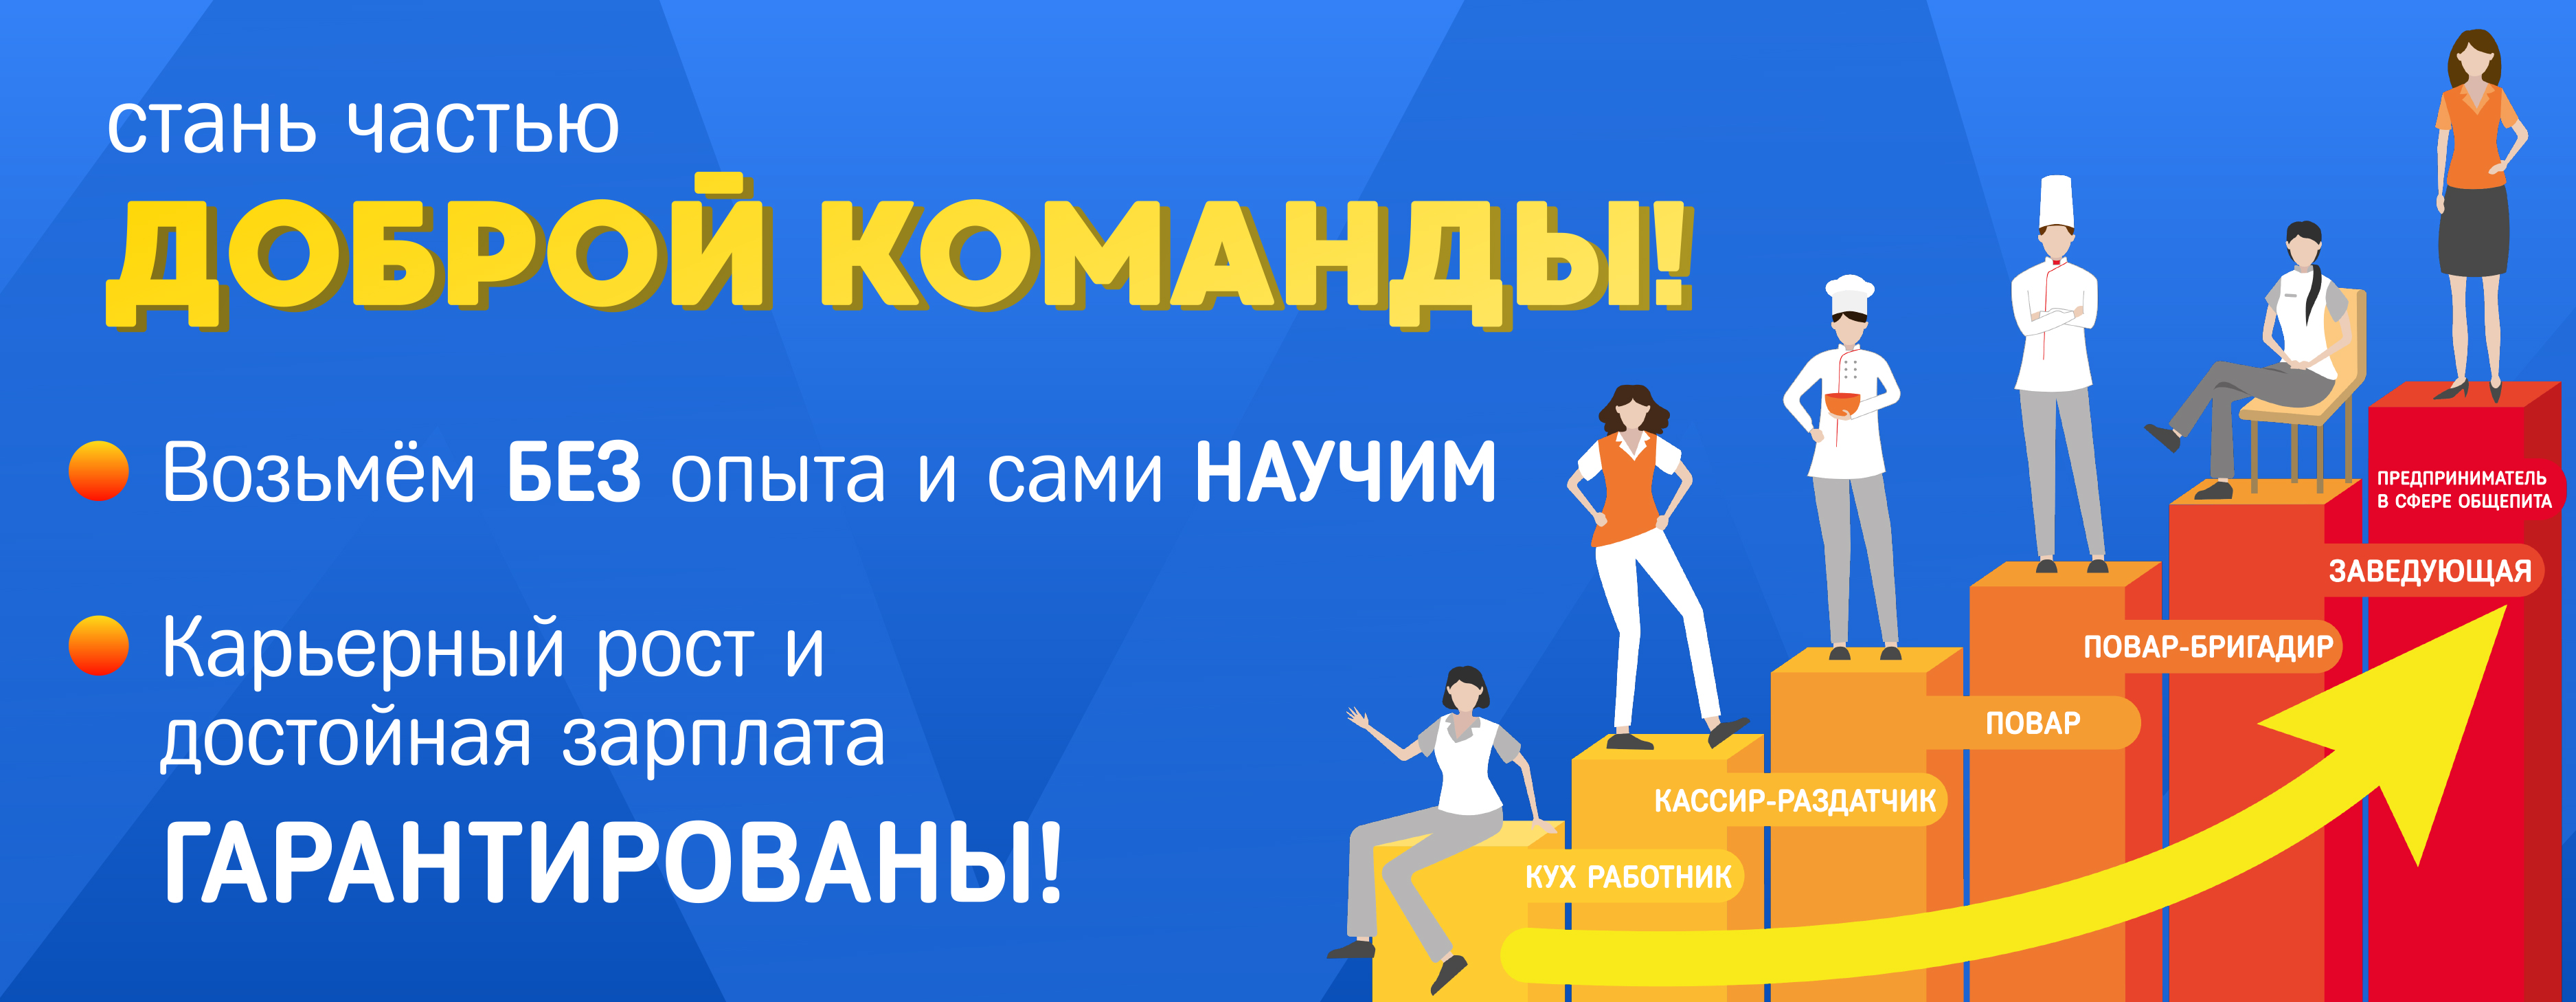 Стань частью доброй команды! в dobraya.su